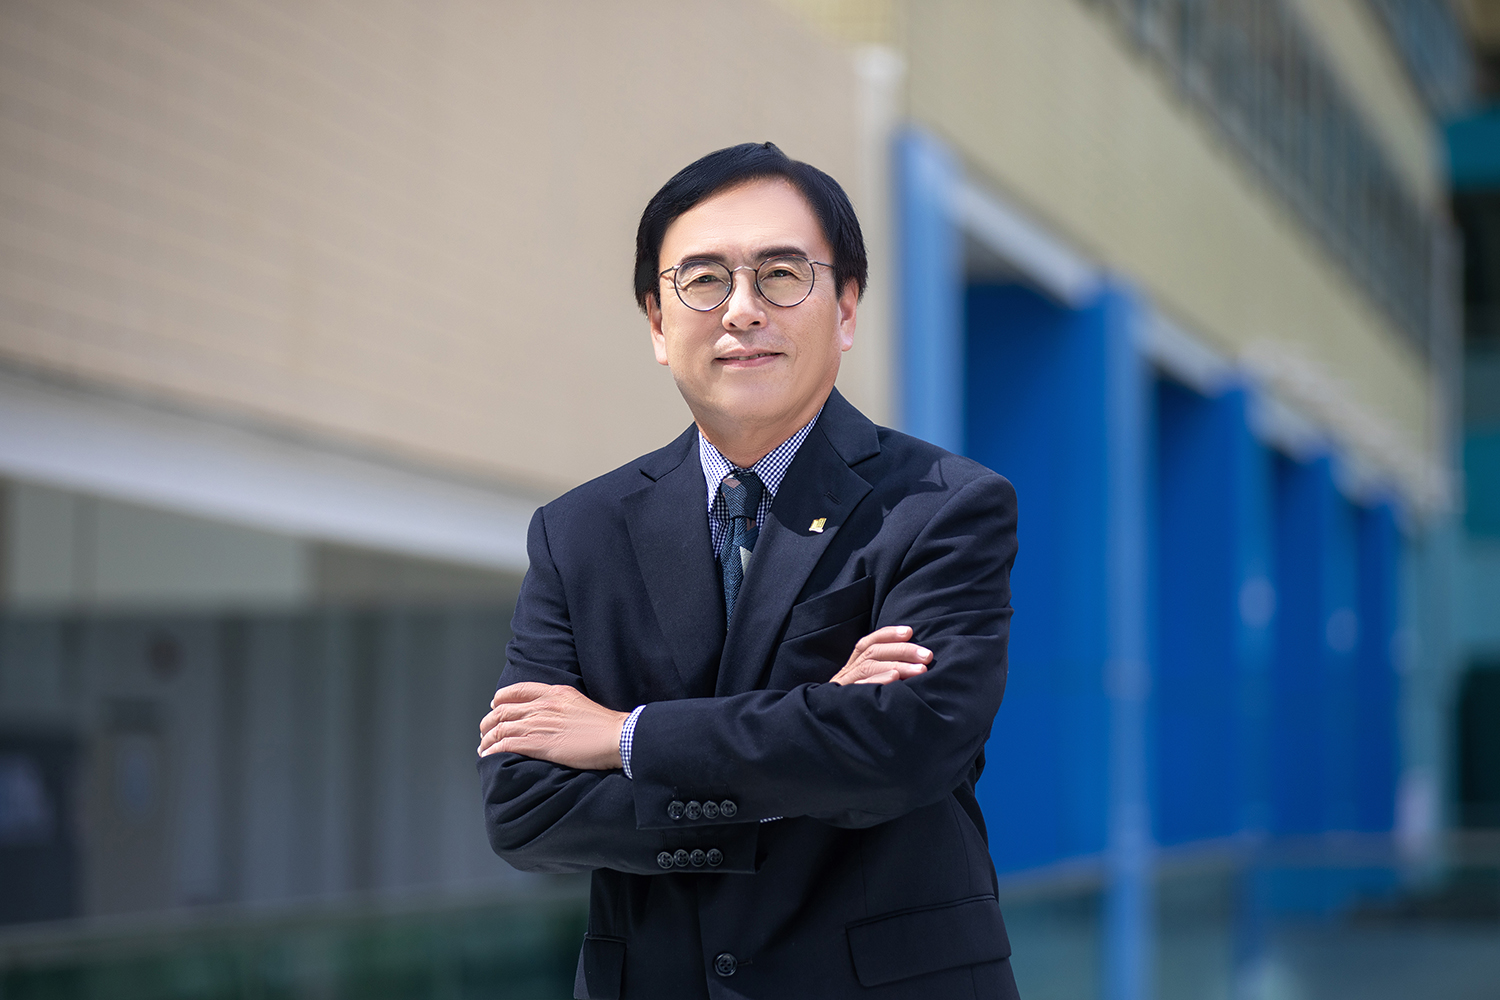 Professor Martin Wong